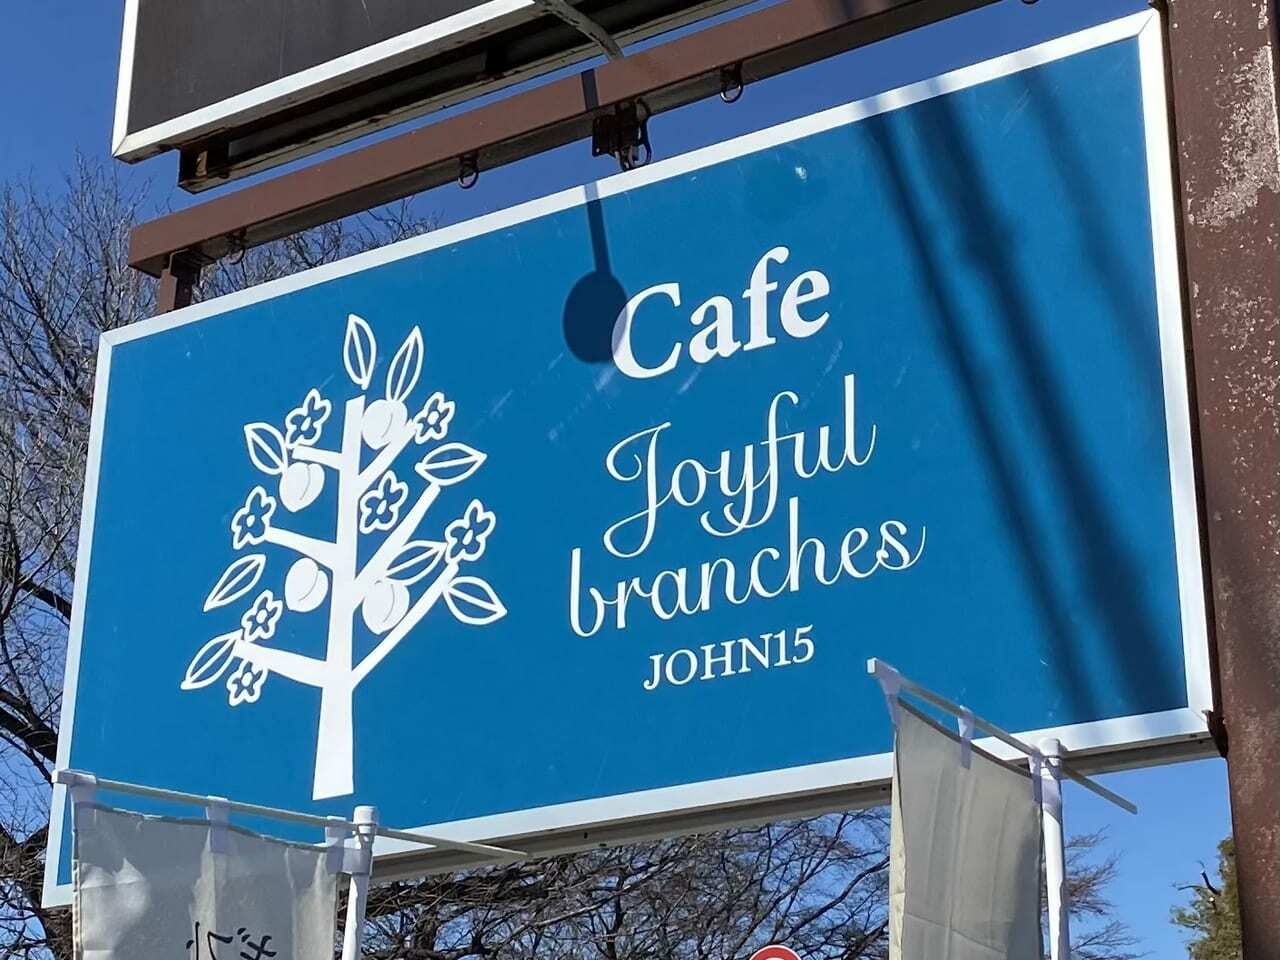 Joyful branches John15